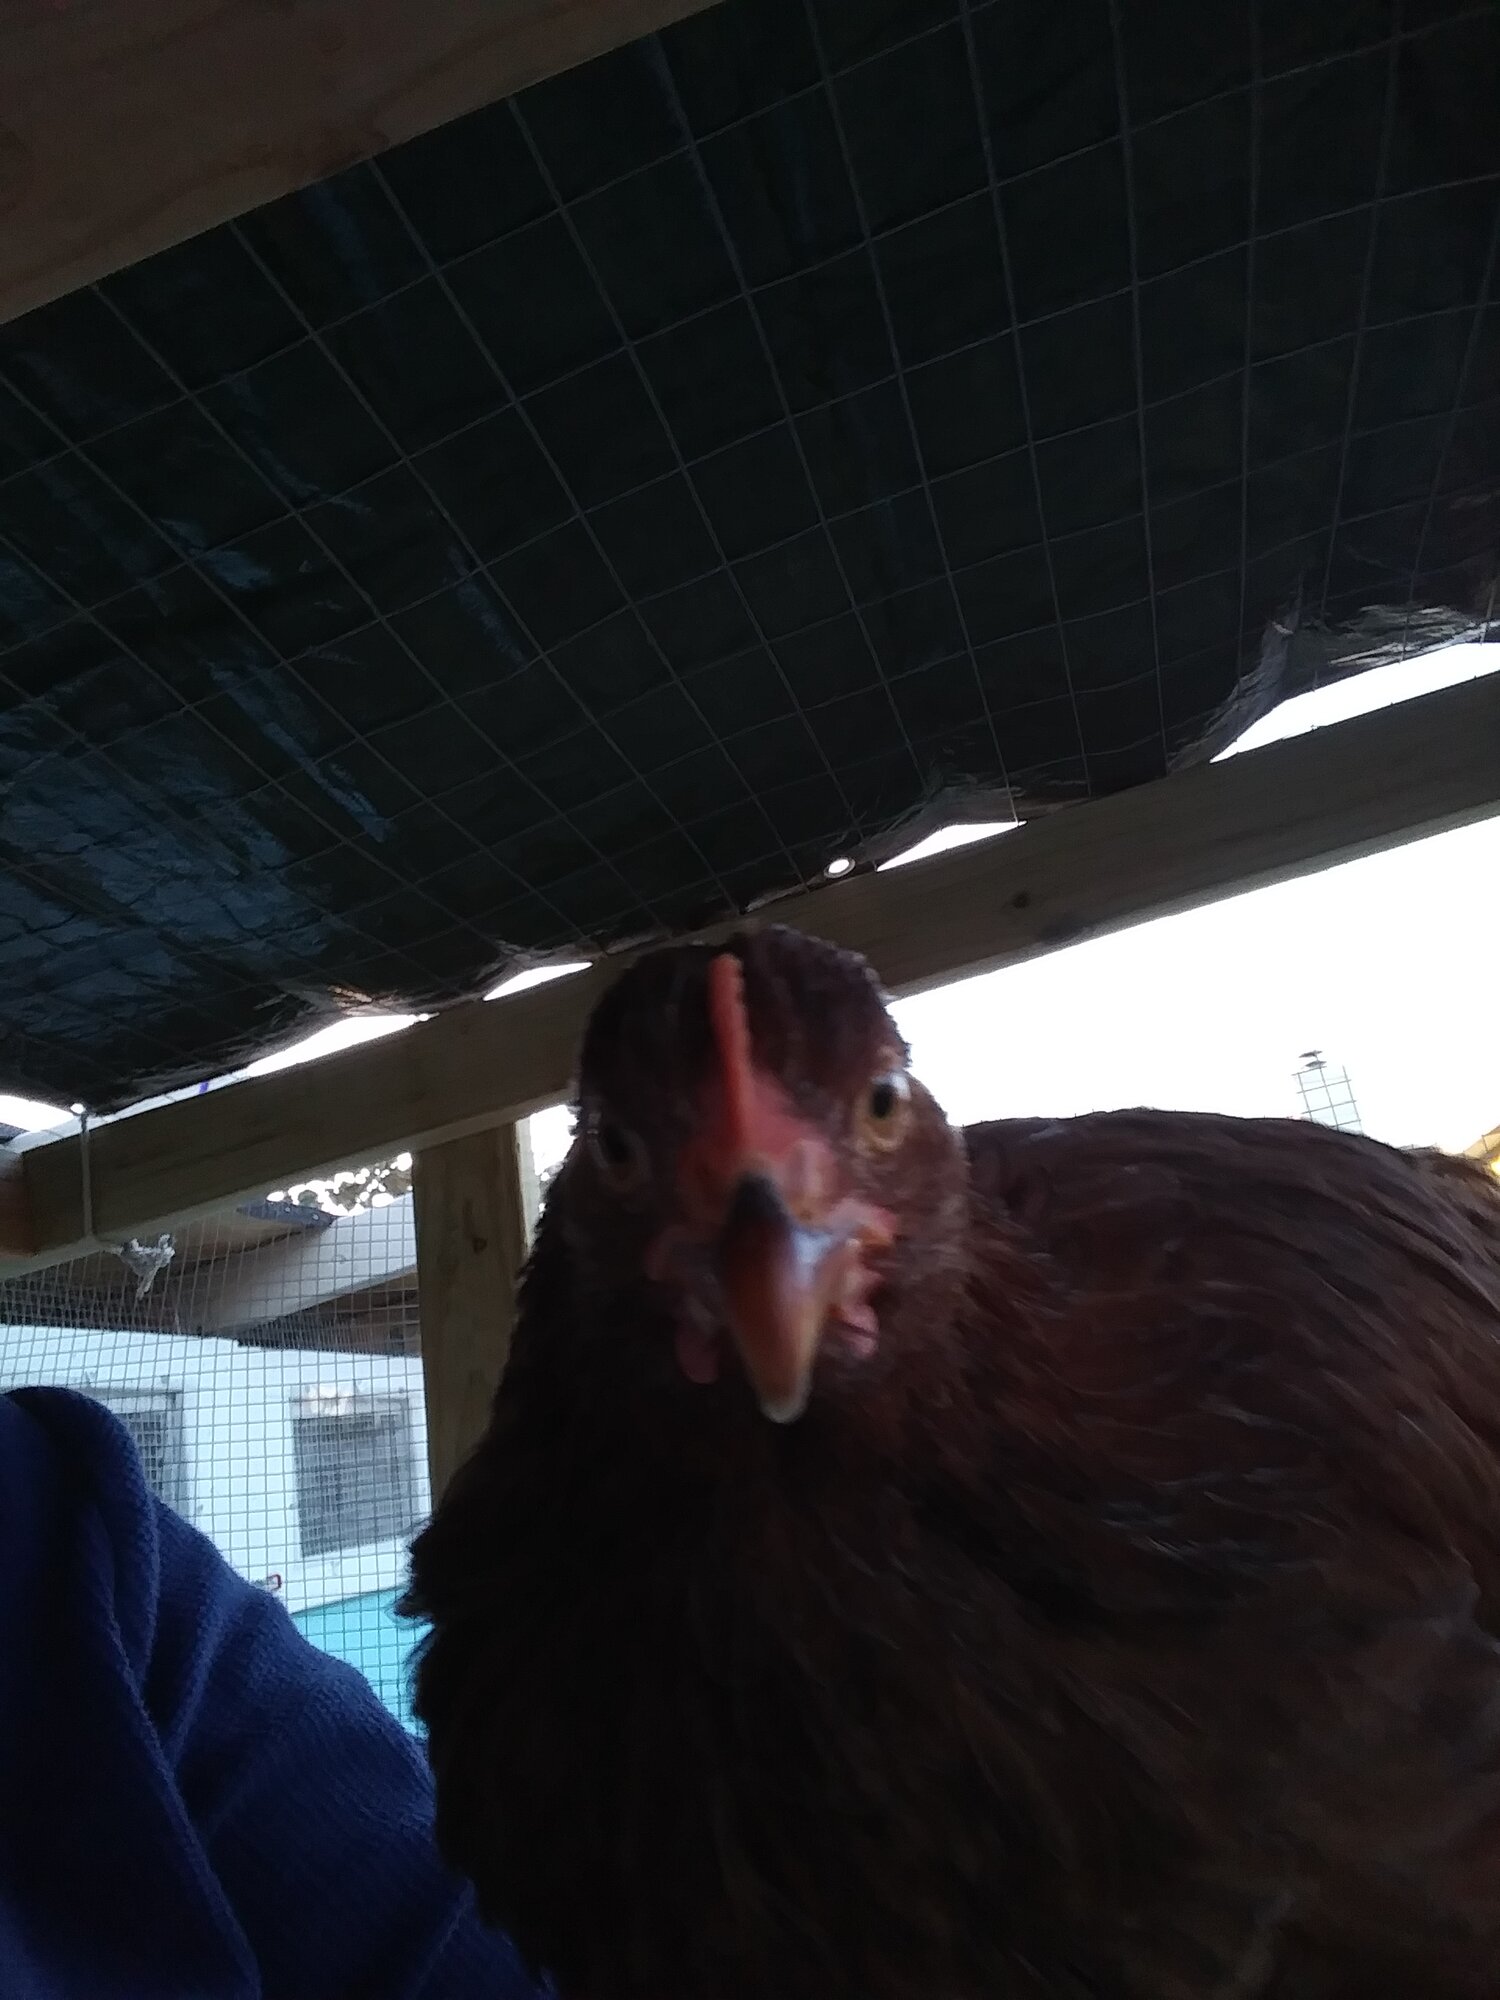 11-16-18 - Chicken Selfie 1